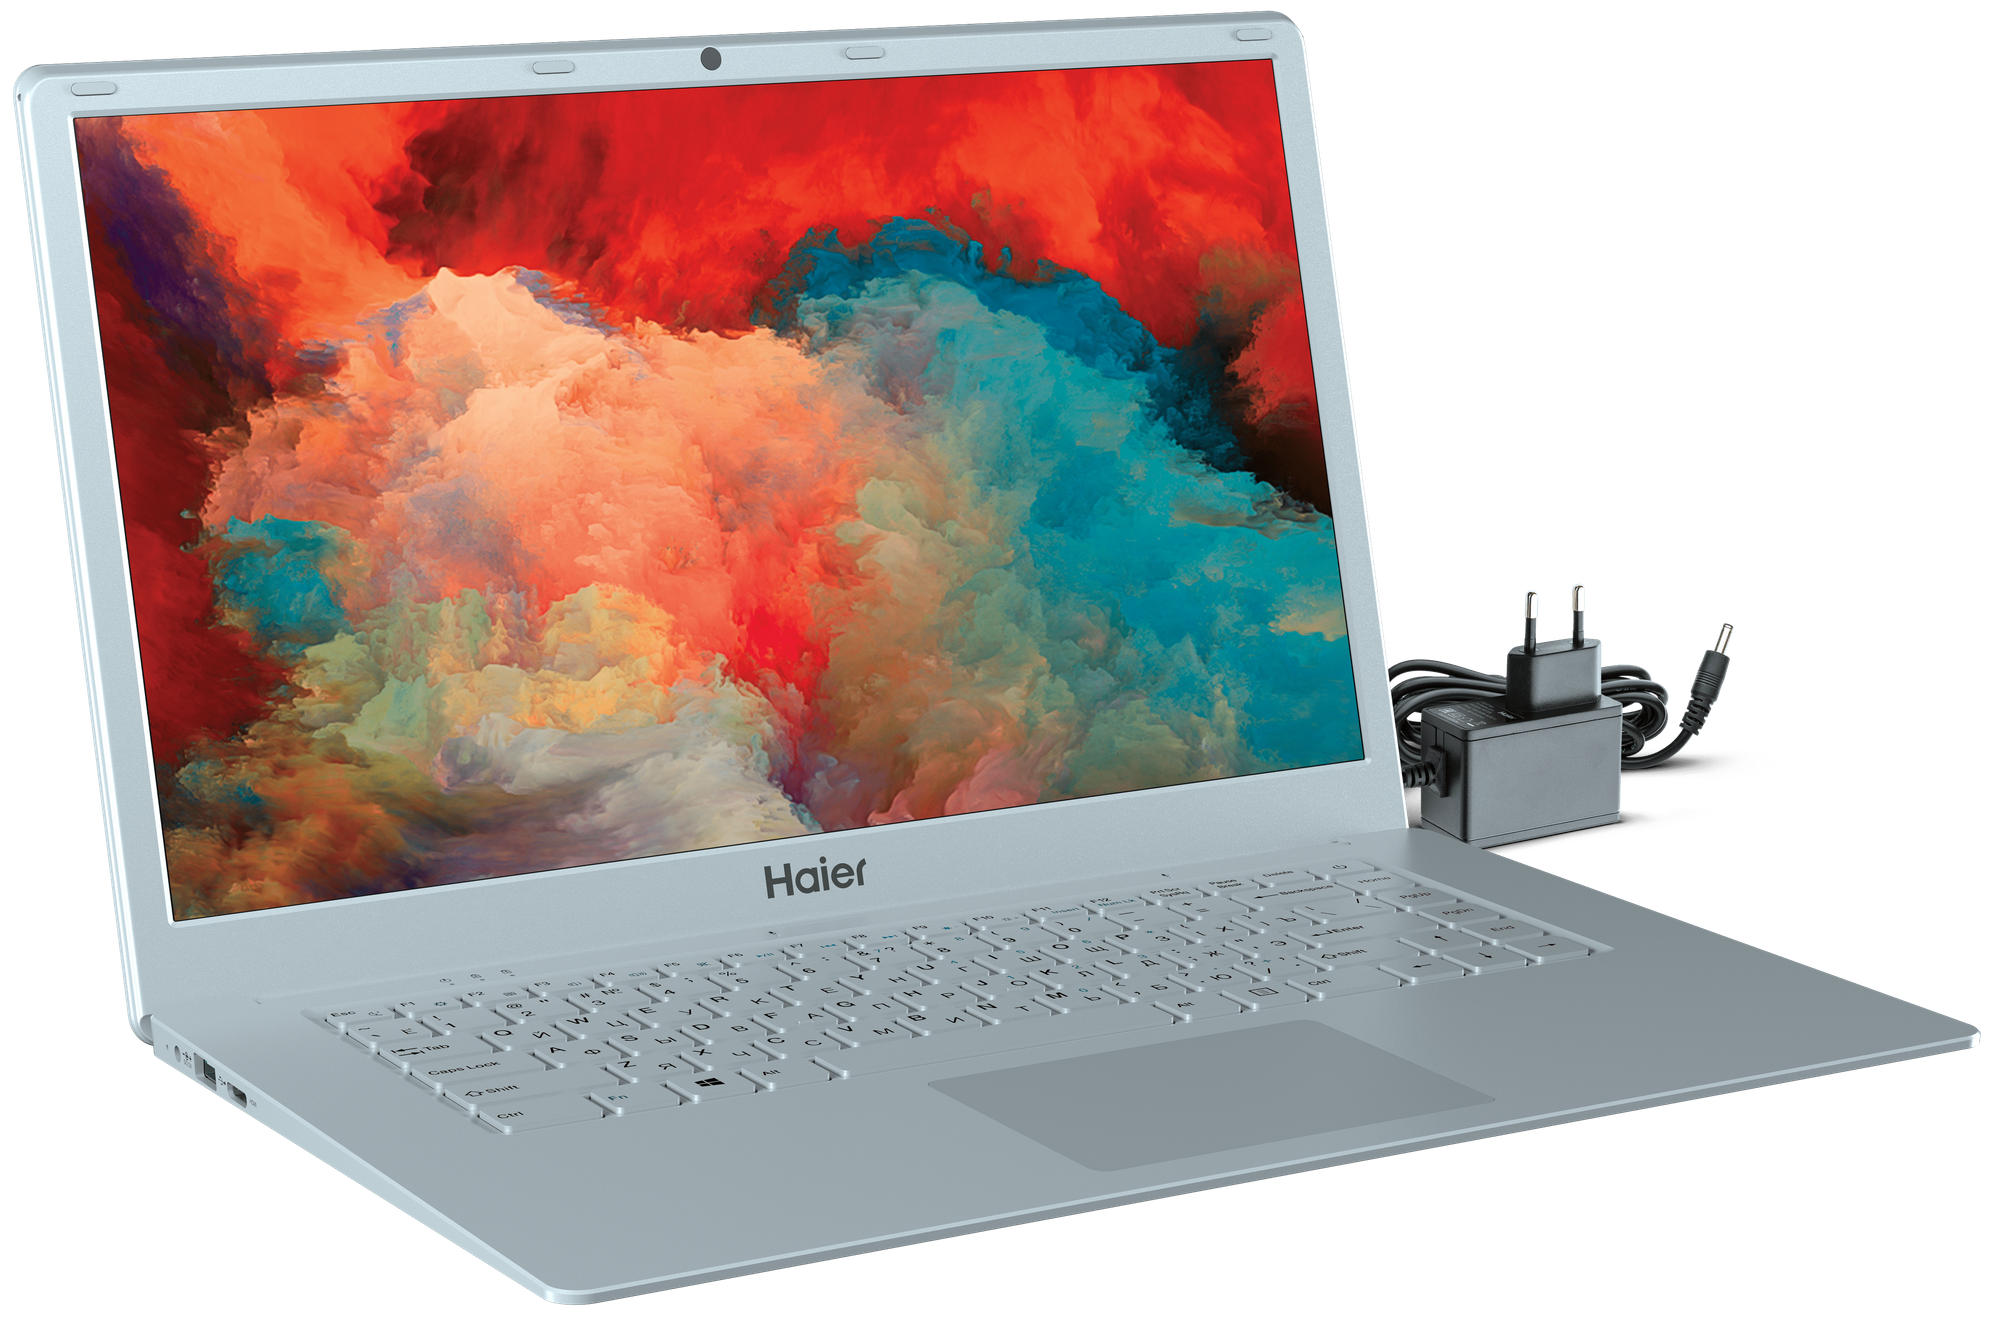 Ноутбук Haier U1520SM